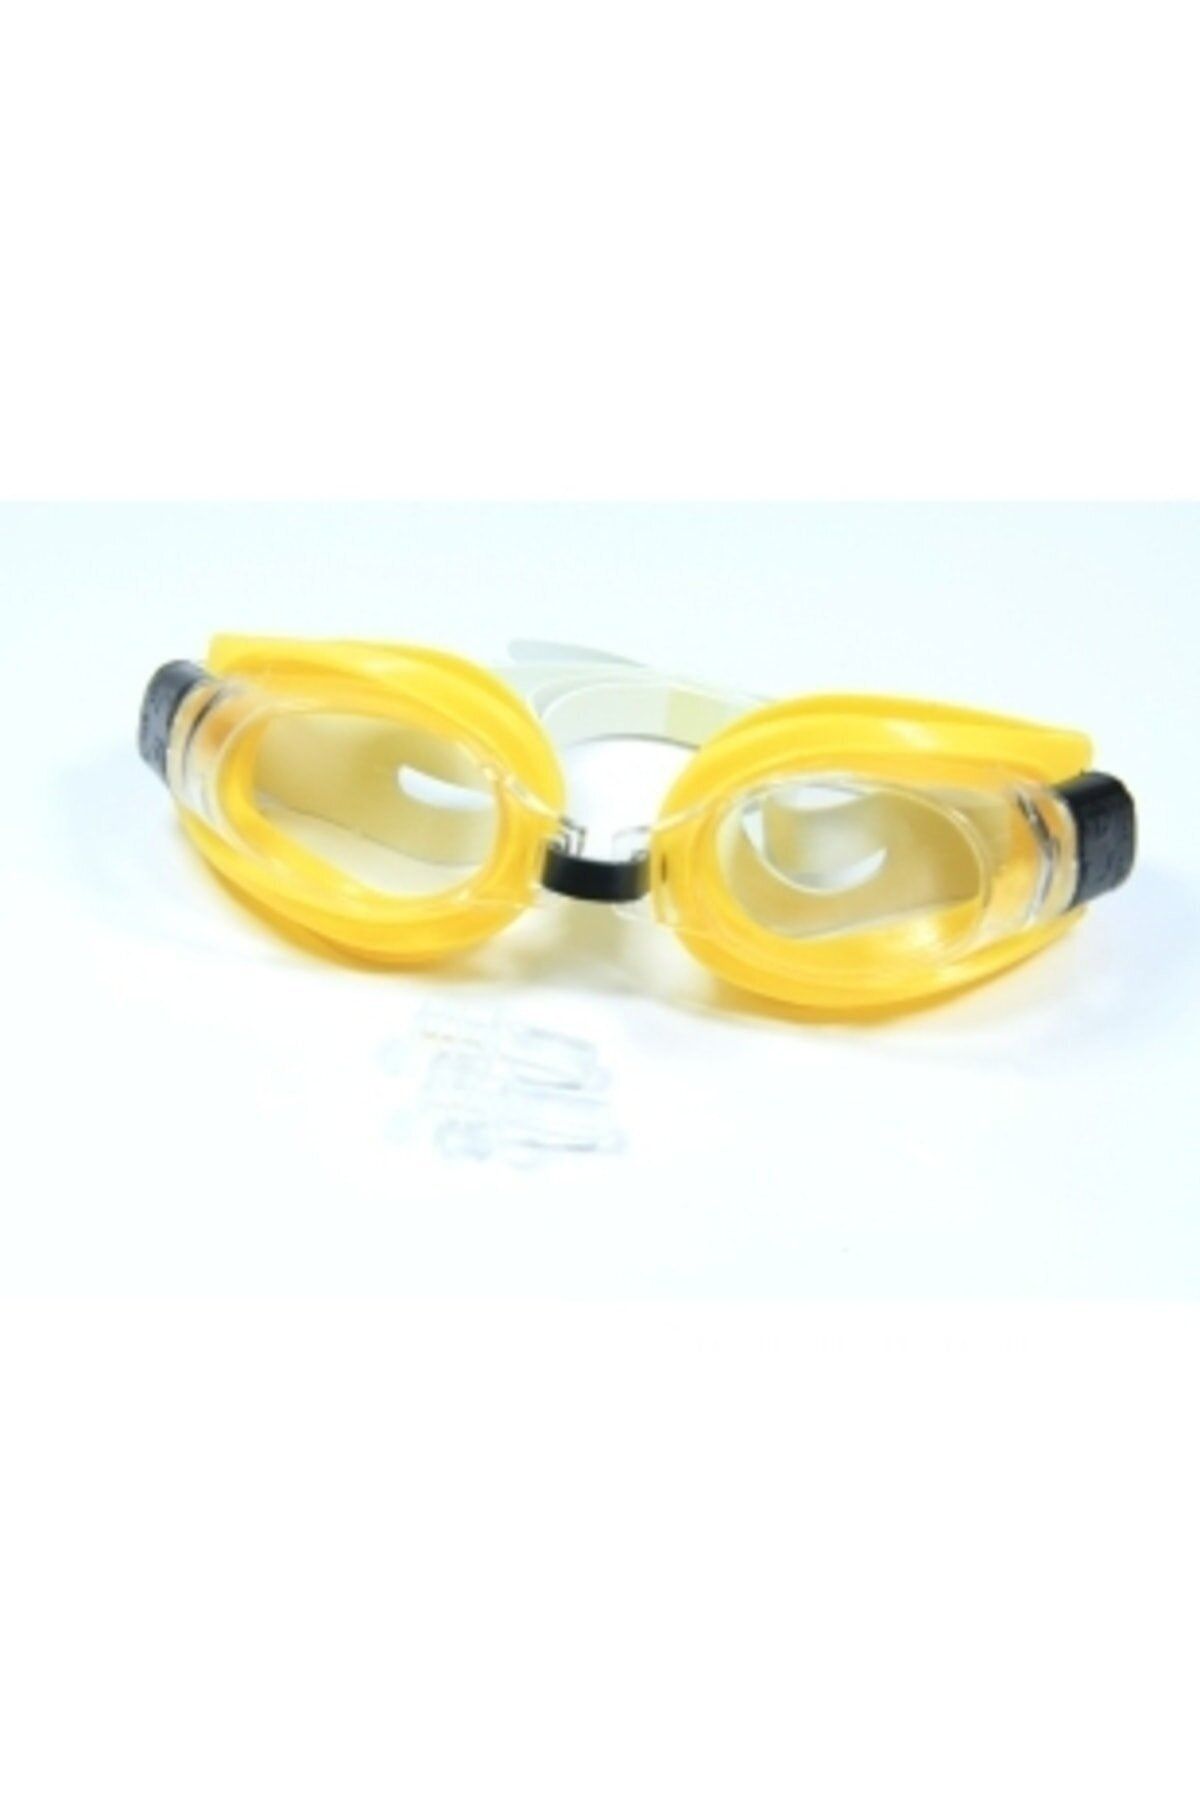 Vardem Kartela Kulak Tıkaçlı Yüzücü Deniz Havuz Gözlüğü Deniz Malzemeleri